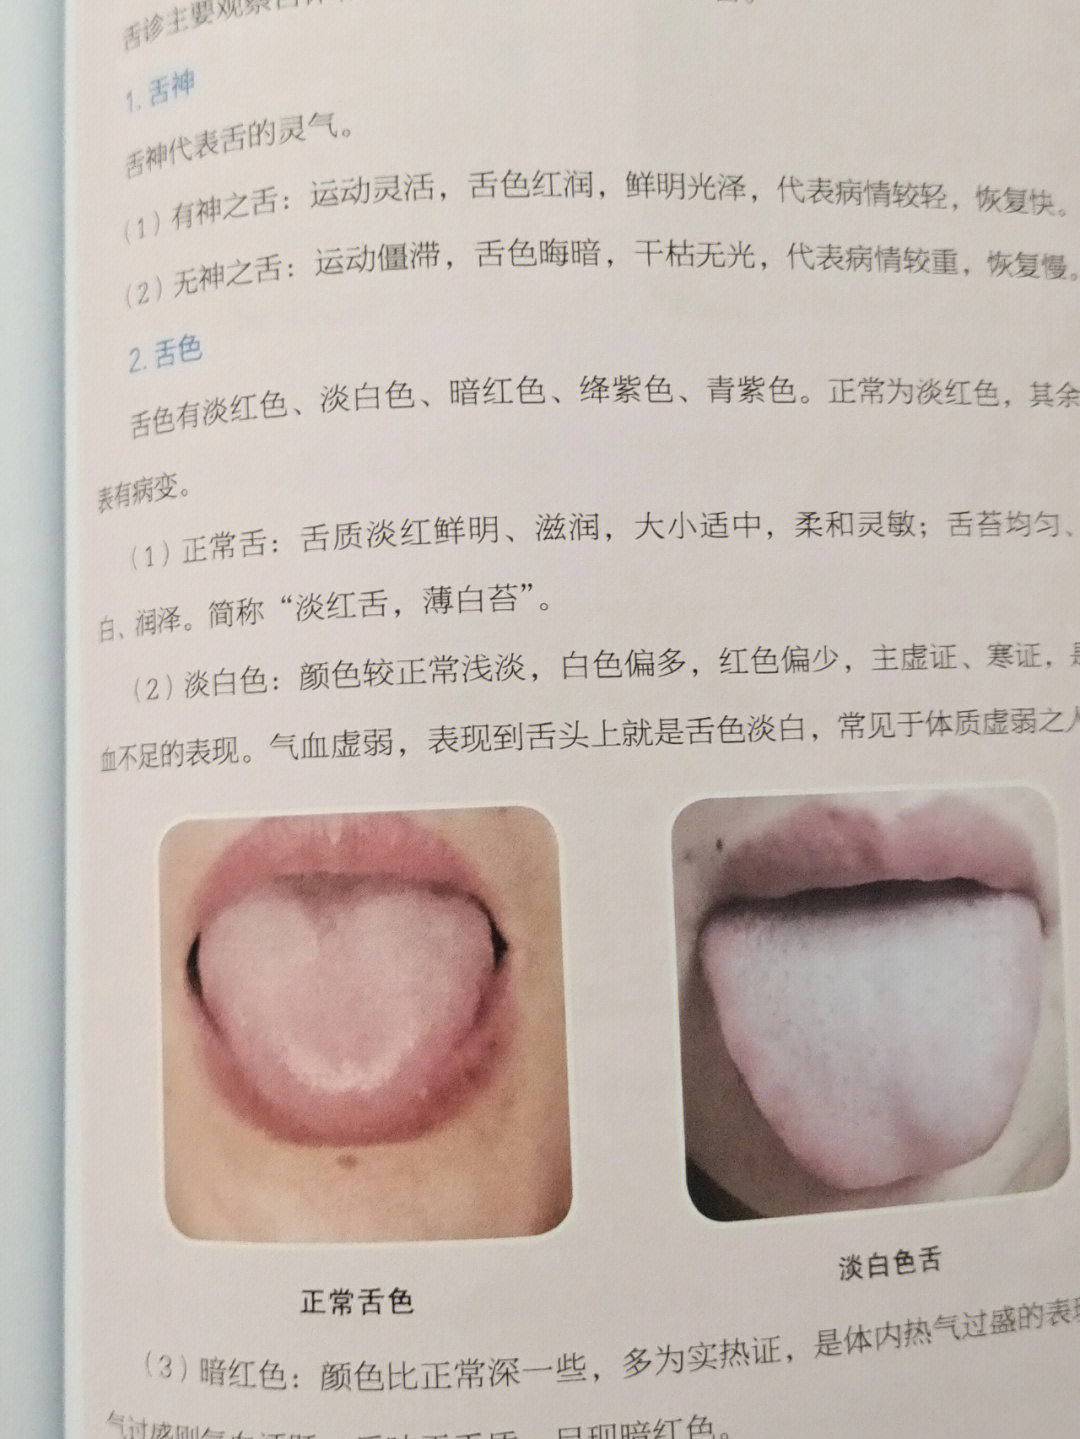 老舌和嫩舌有啥区别图片